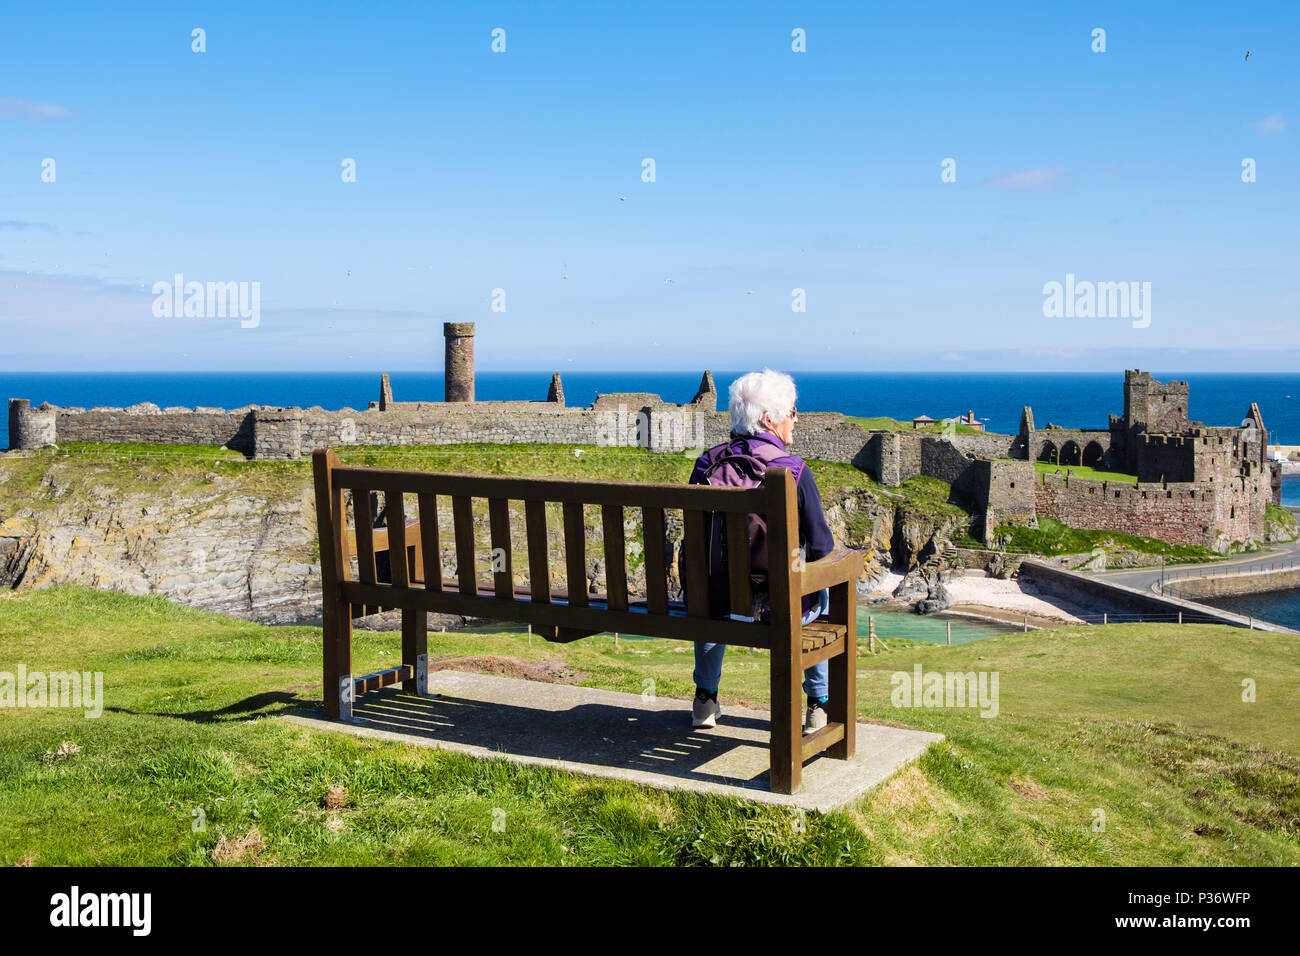 Ältere Rentnerin OAP Dame entspannen allein im Urlaub sitzen auf einer Bank auf dem Hügel mit Blick auf Peel Burgruinen. Peel, Isle of man, Britische Inseln Stockfoto